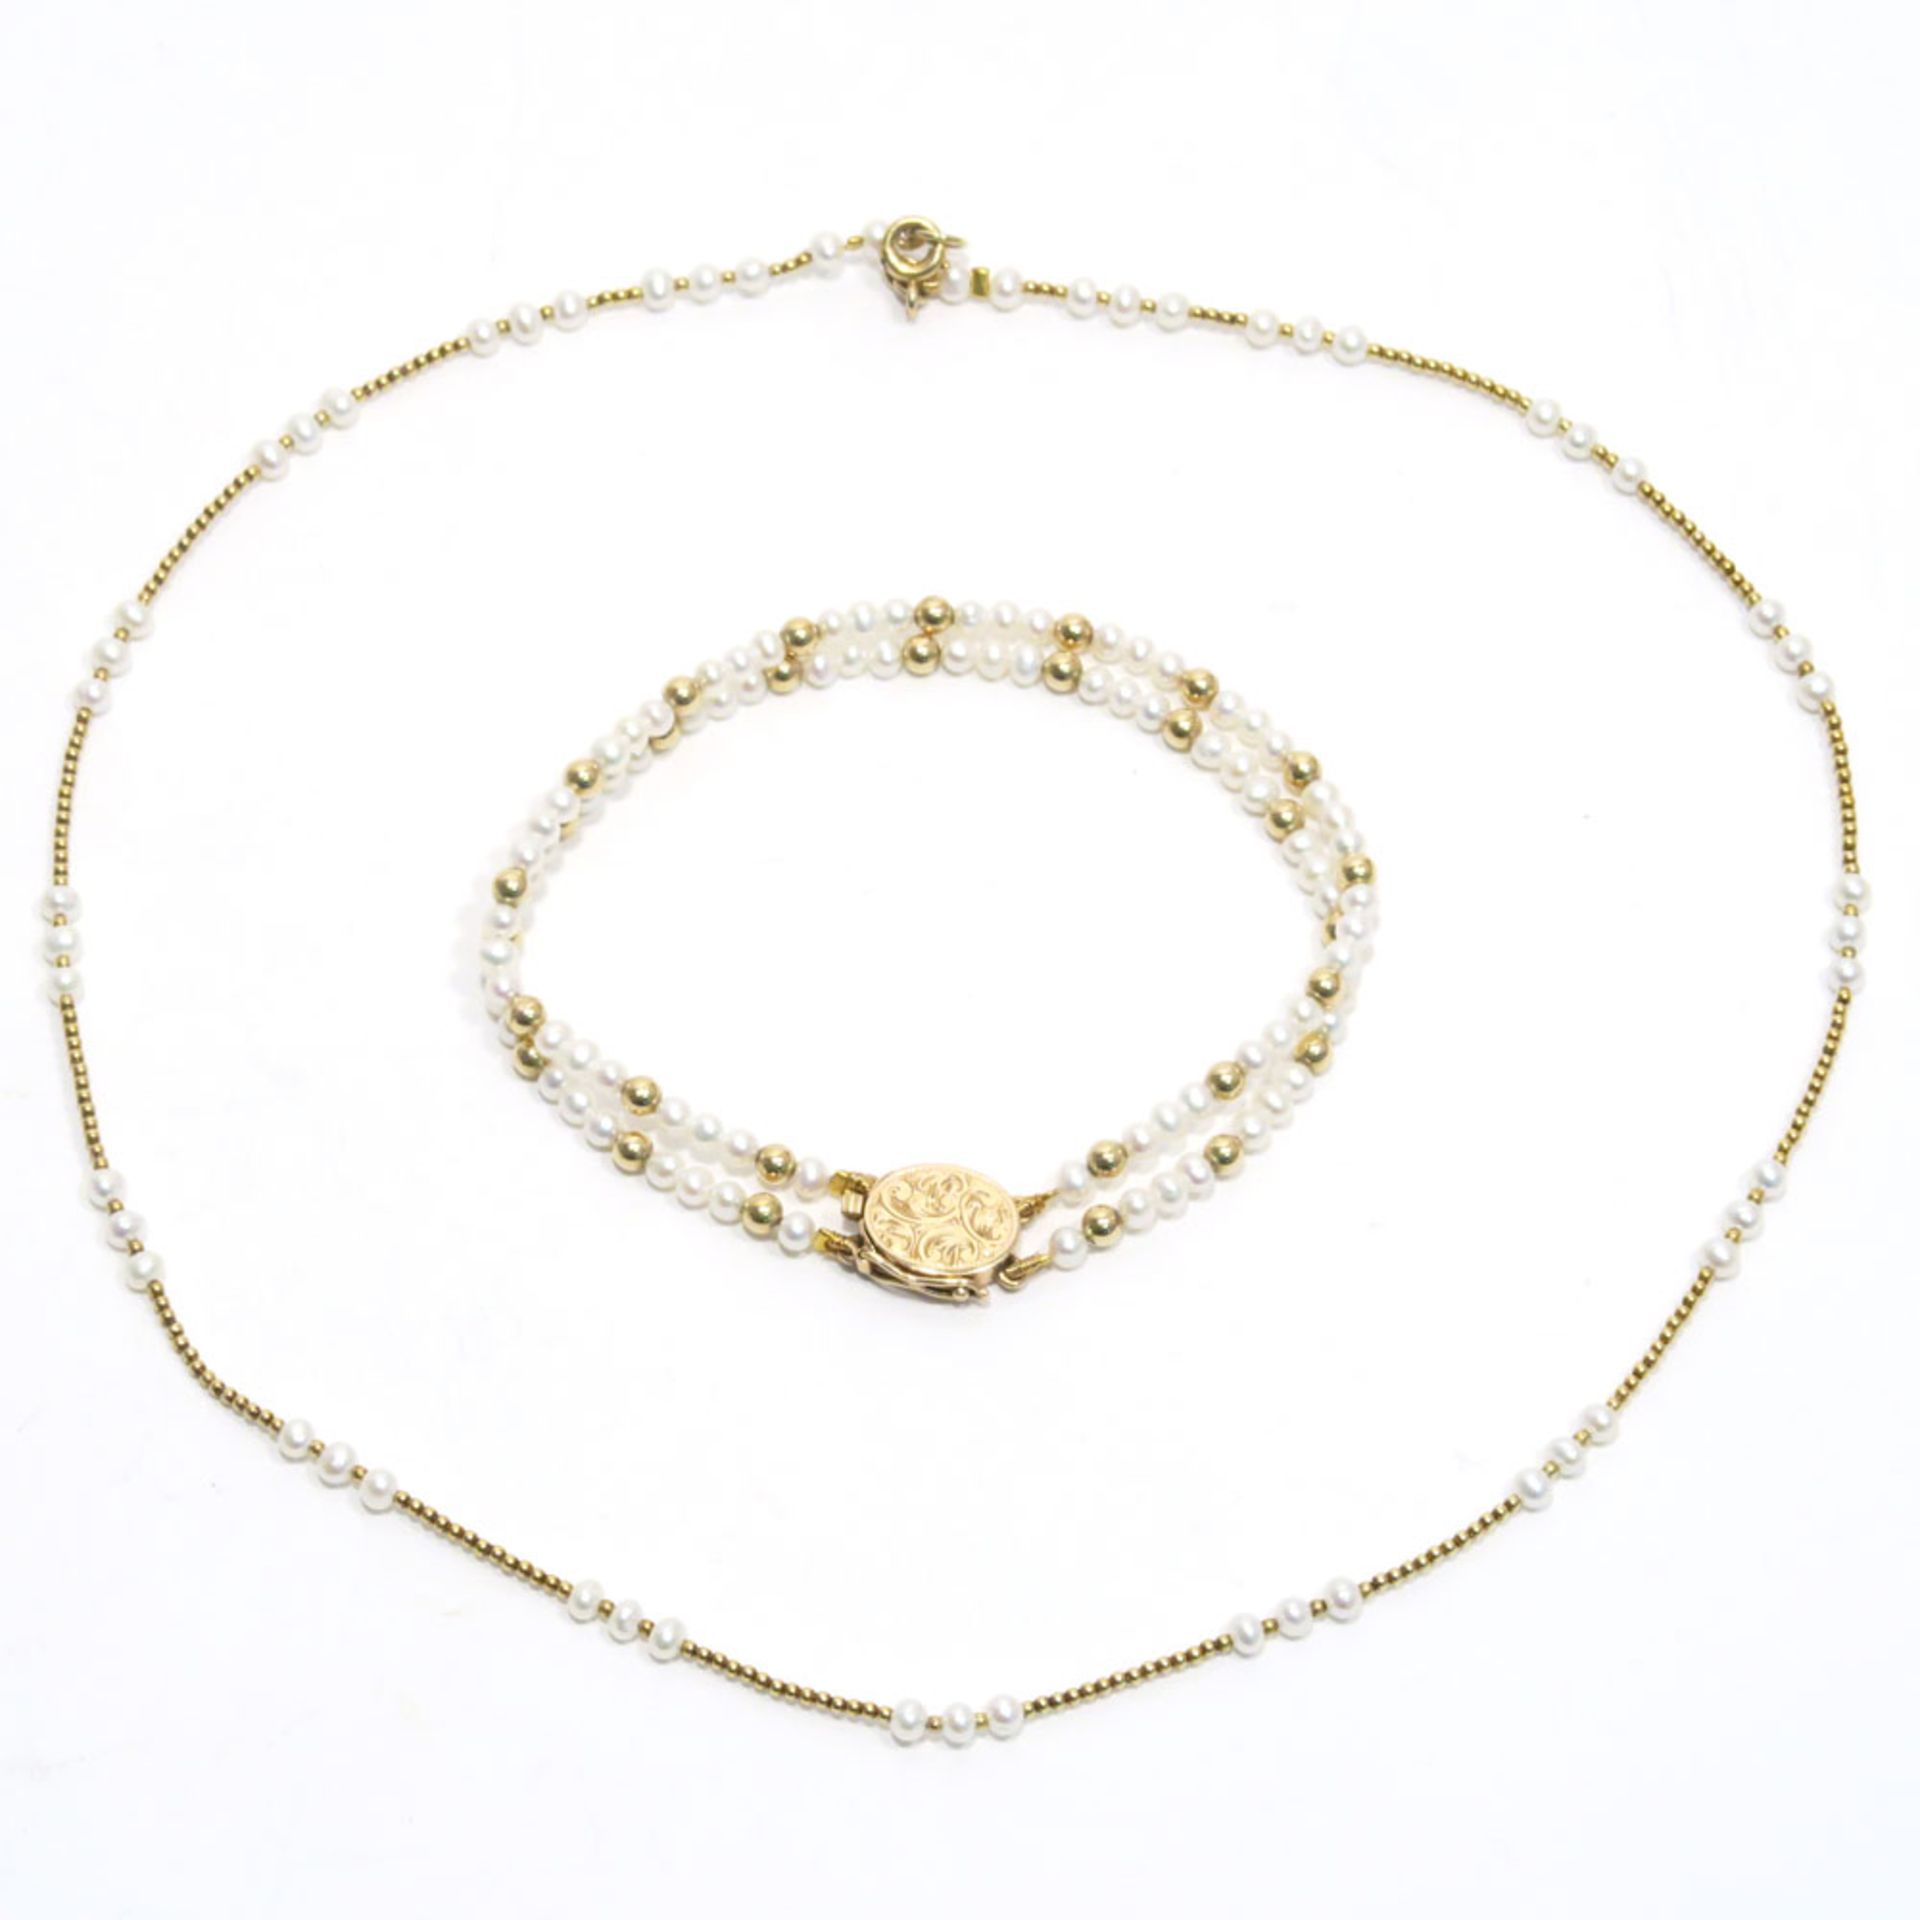 Perlenkette und -armband14 K GG, (geprüft). Ein- bzw. zweireihig, kleine Perlen im Wechsel mit